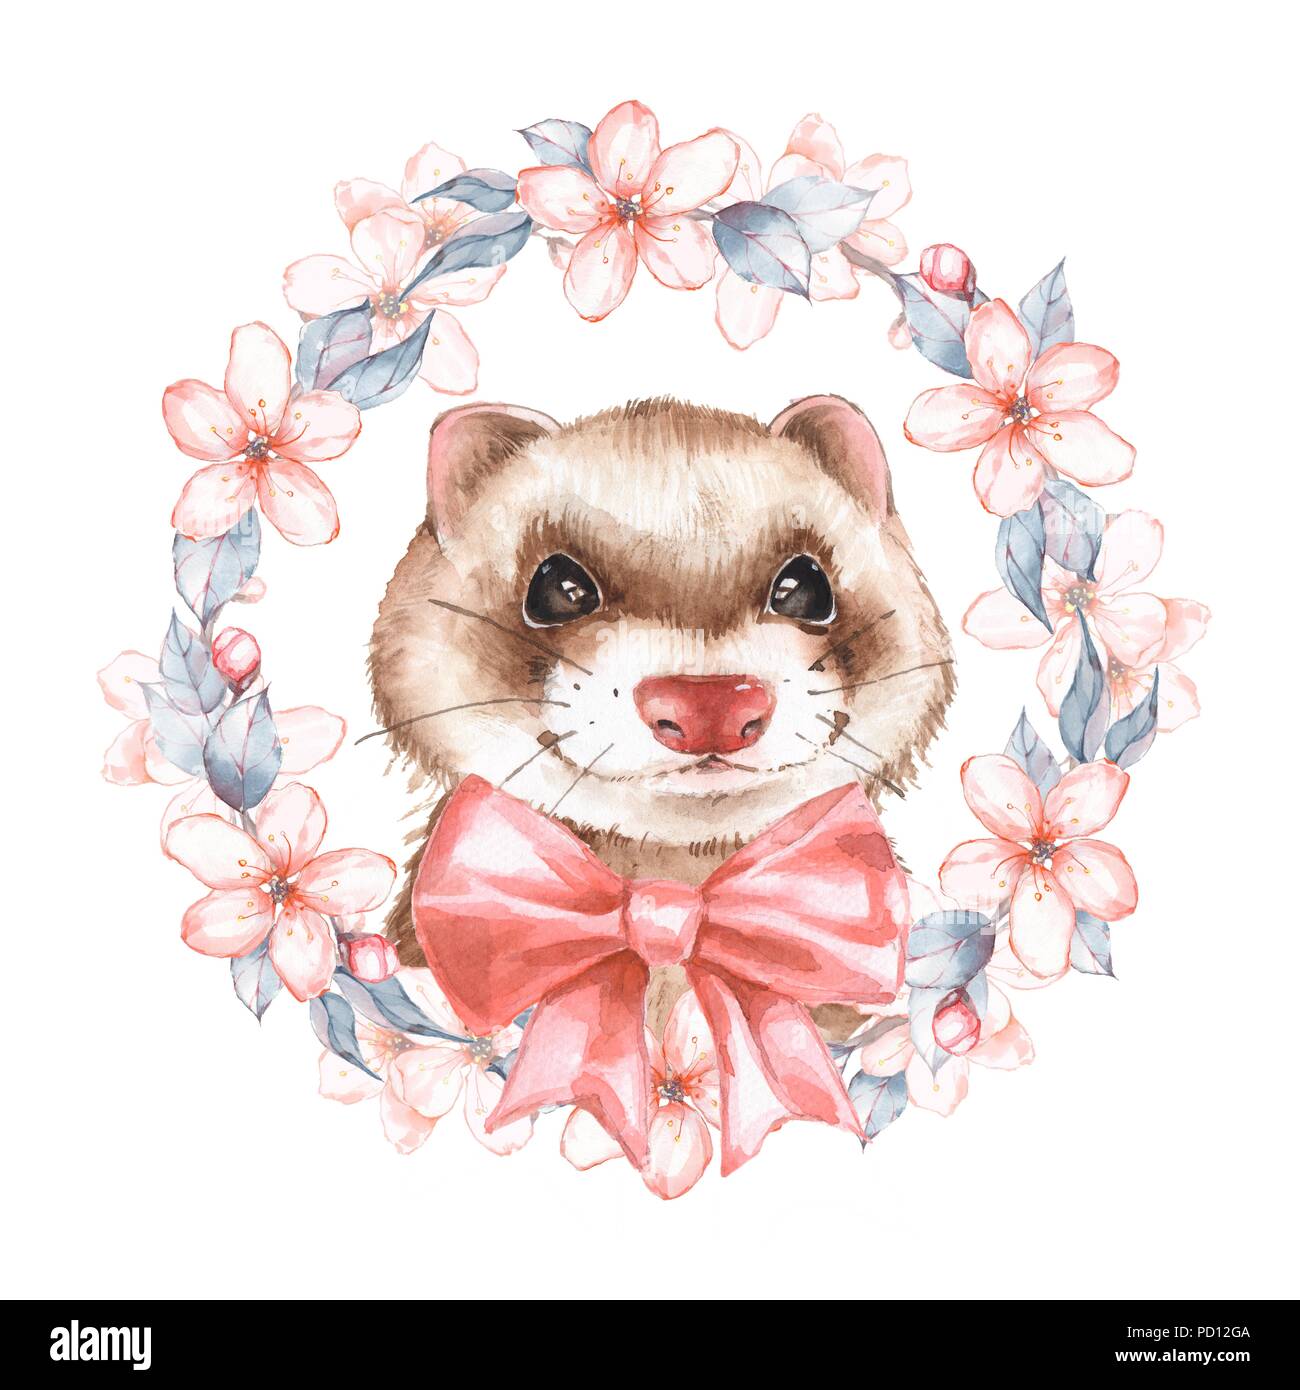 Cute ferret. Watercolor illustration Stock Photo